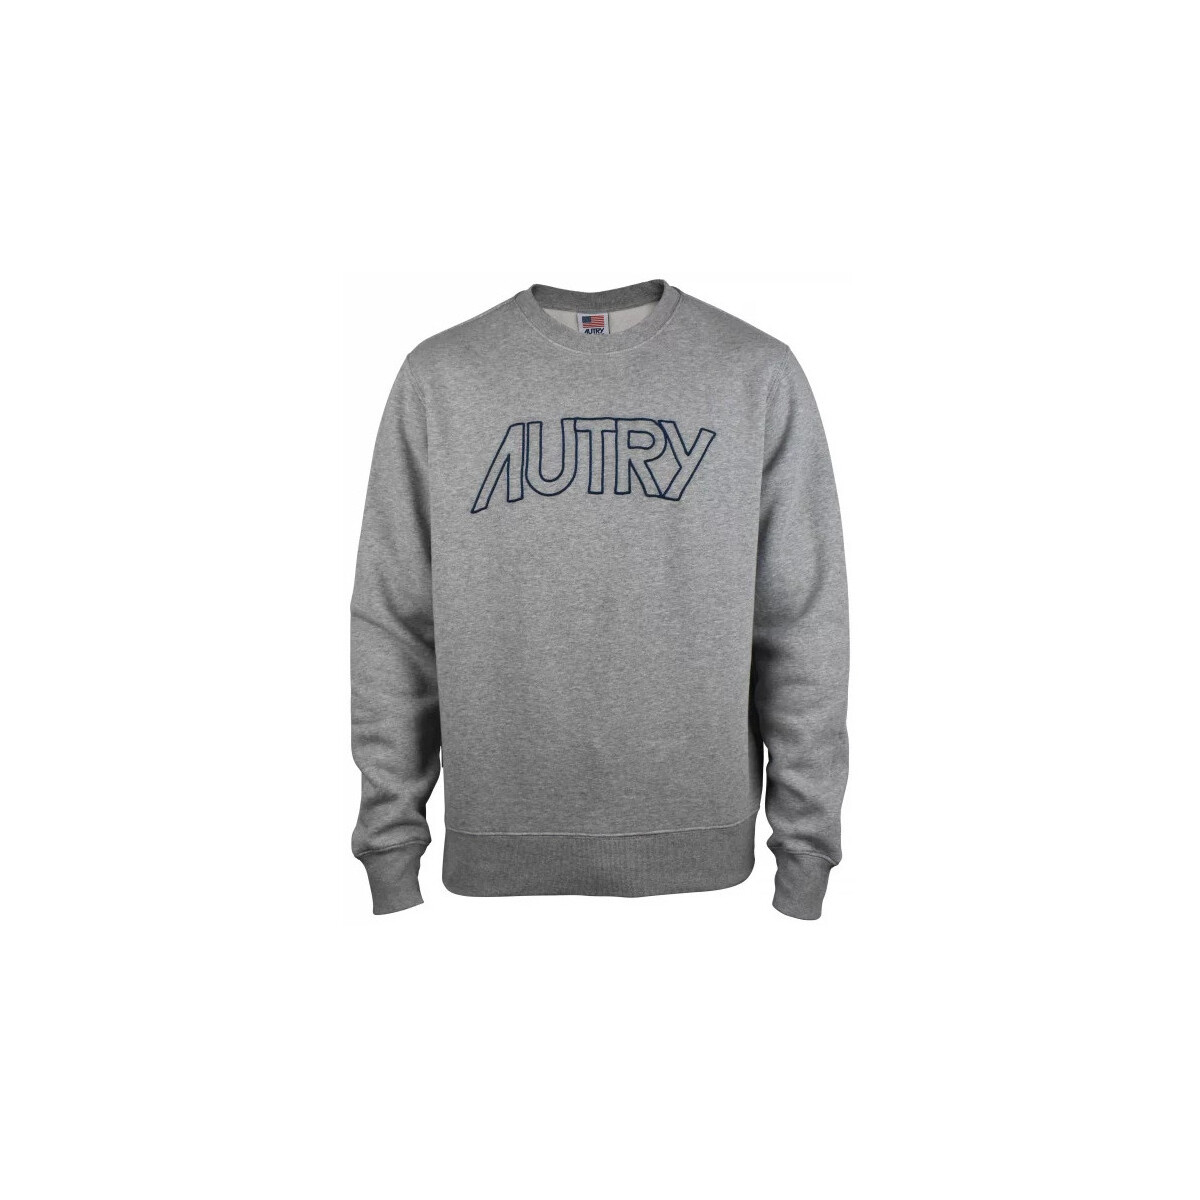 Textiel Heren Sweaters / Sweatshirts Autry  Grijs